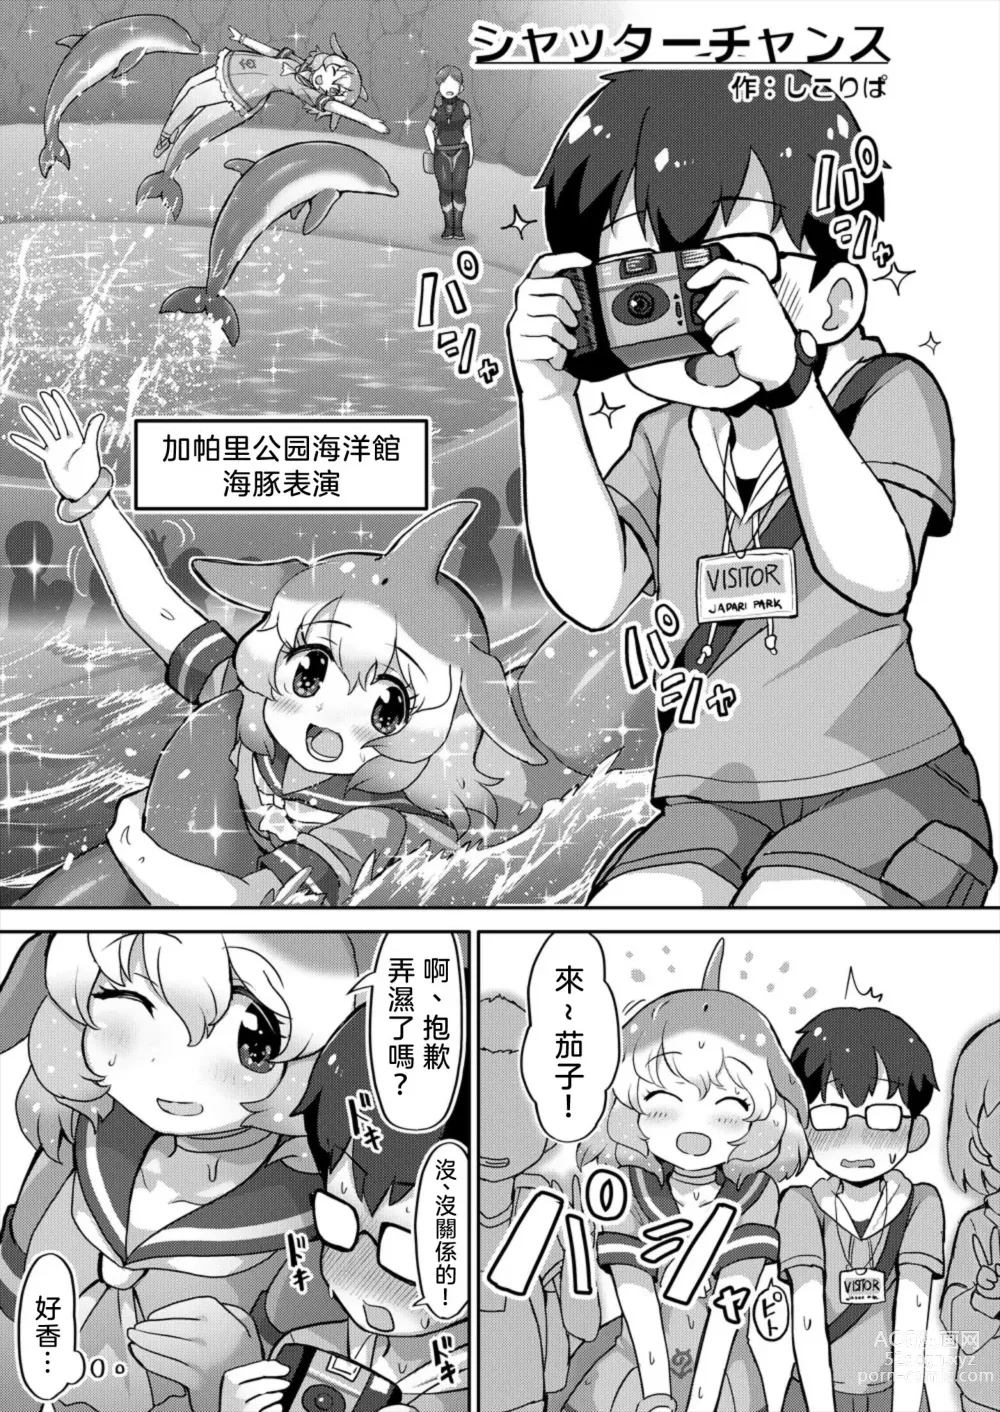 Page 5 of doujinshi Japari Park Seitsuu Goudoushi 2 ~Animal Girl ni Yoru Seitsuu Hatsugen Keitai Kirokushuu~